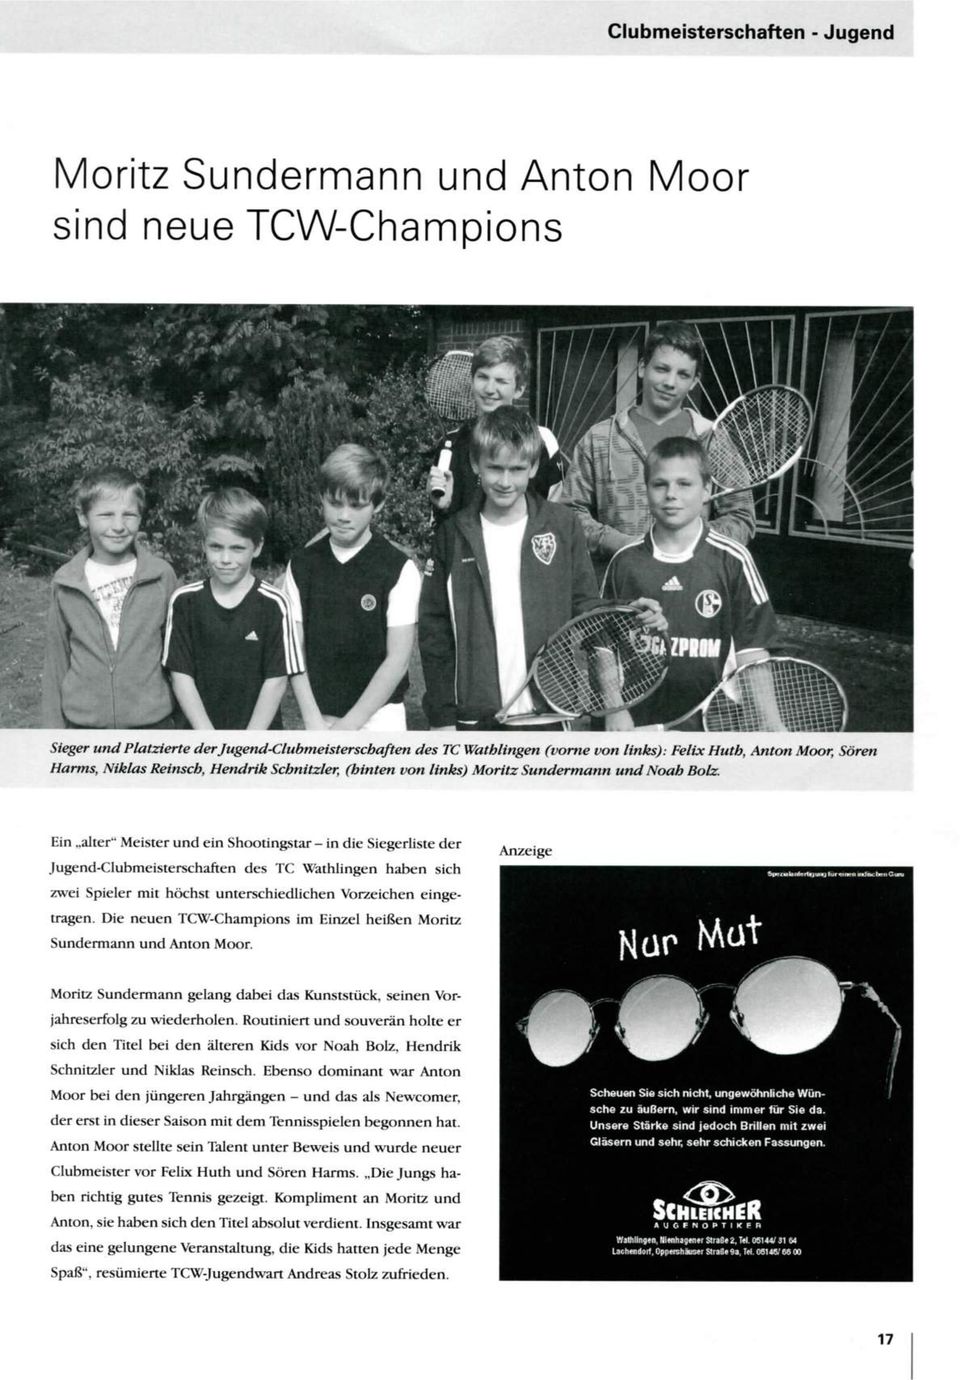 Ein alter" Meister und ein Shootingstar - in die Siegerliste der Jugend-Clubmeisterschaften des TC Wathlingen haben sich zwei Spieler mit höchst unterschiedlichen Vorzeichen eingetragen.